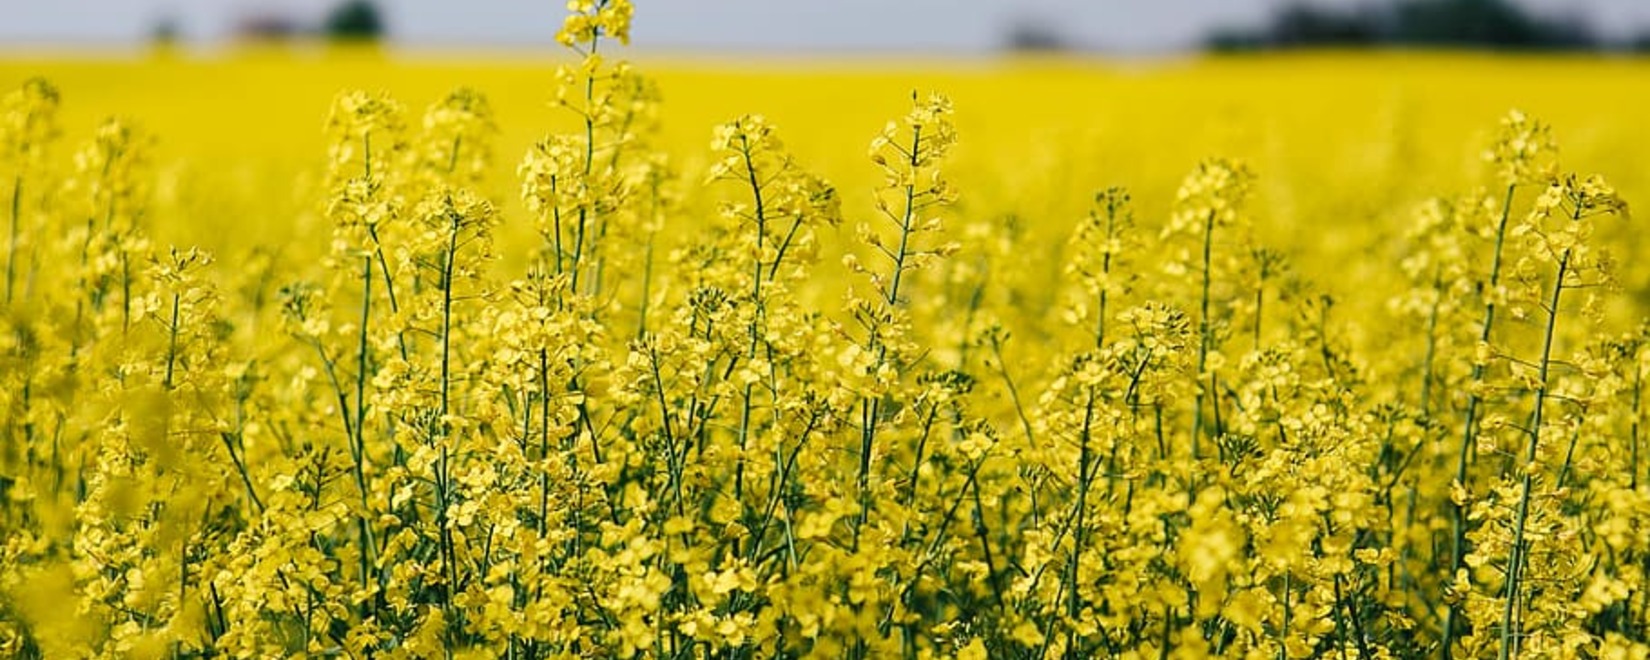 Прогноз украинского урожая масличных культур на следующий сезон: сокращение объемов и перспективы роста производства семян сои.